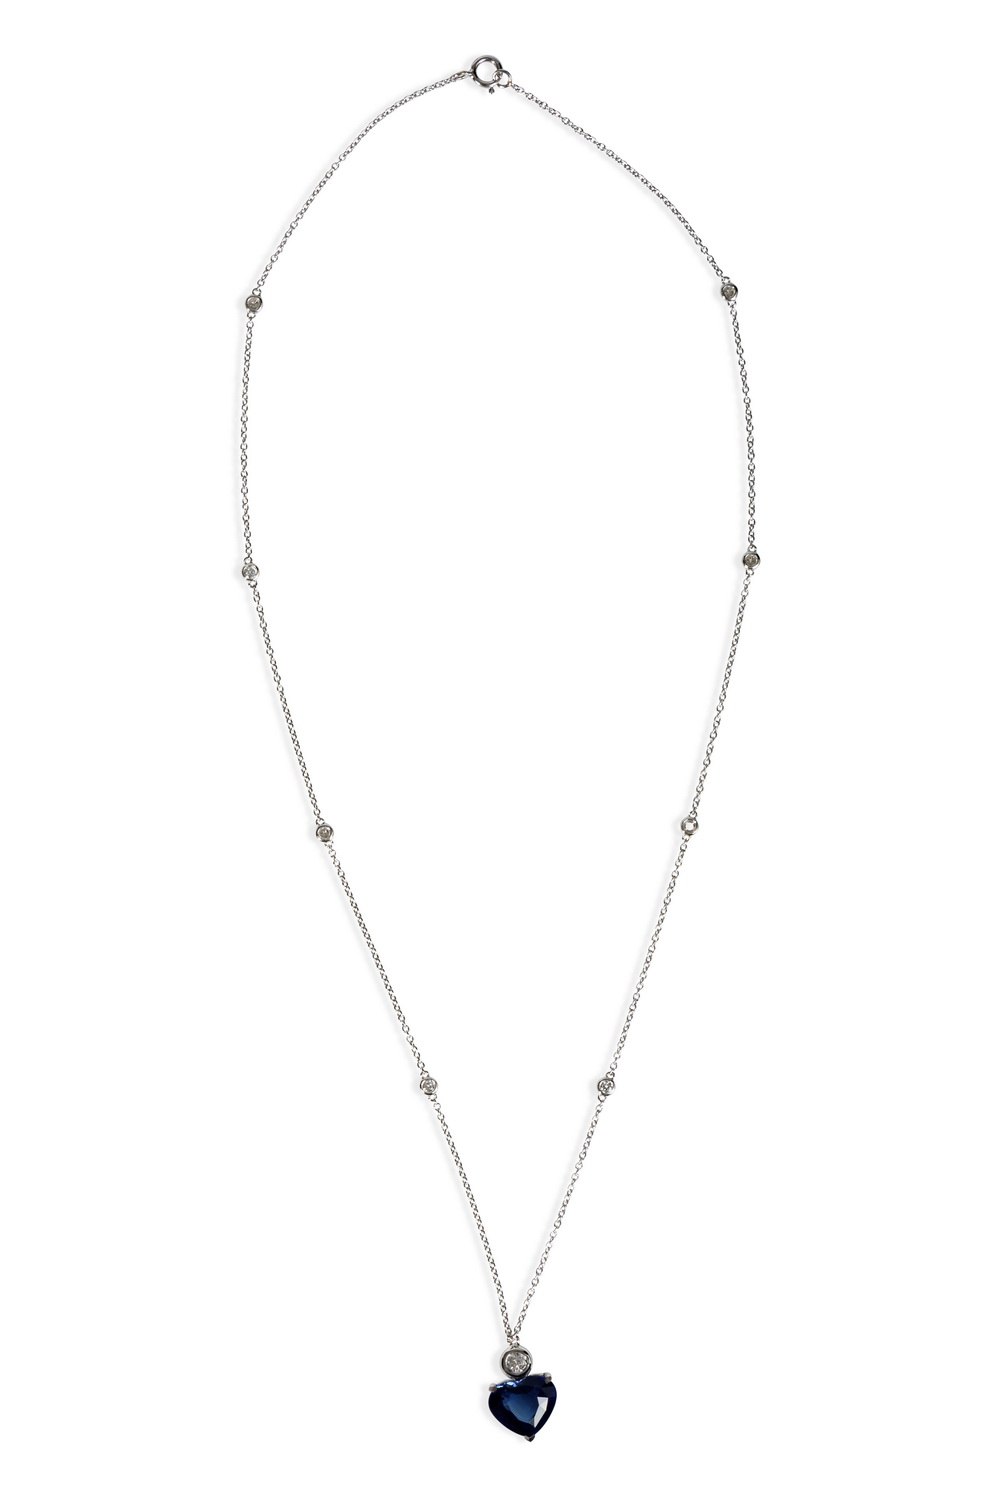 Heart Sapphire Pendant Necklace